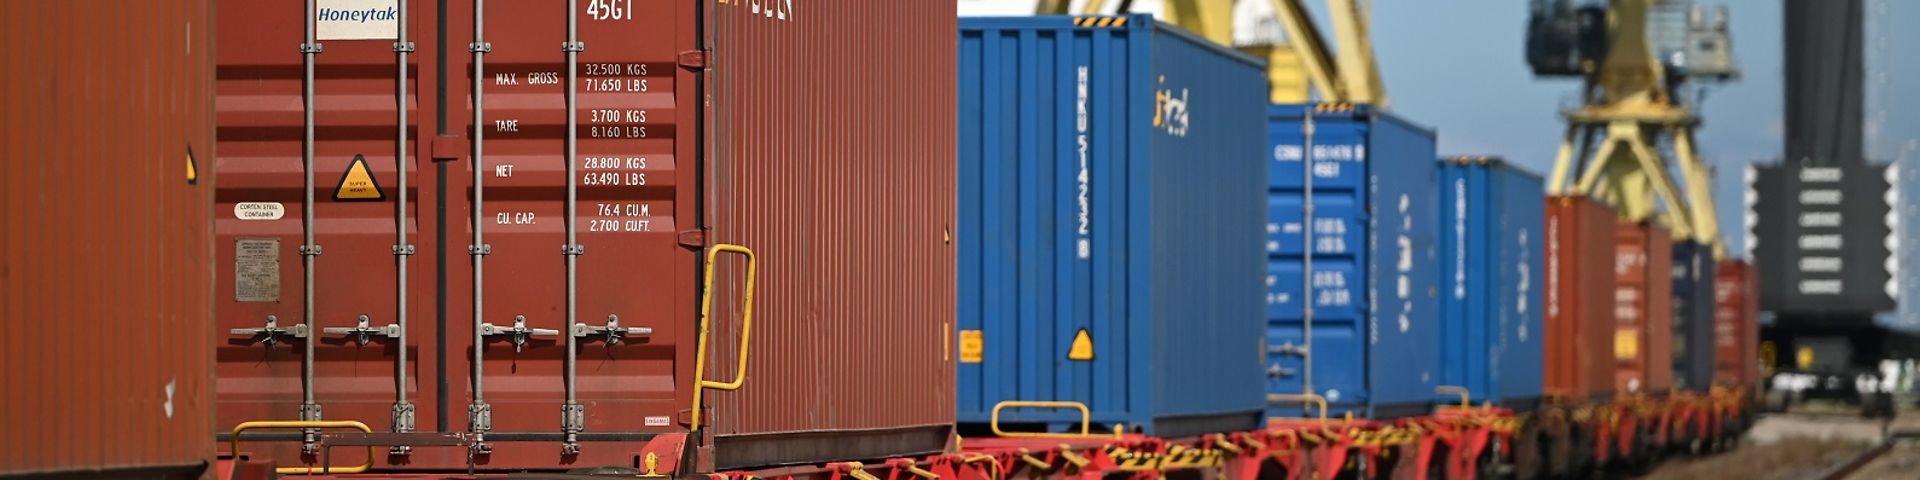 Hafen Entlastung Containerschiff auf Schiene